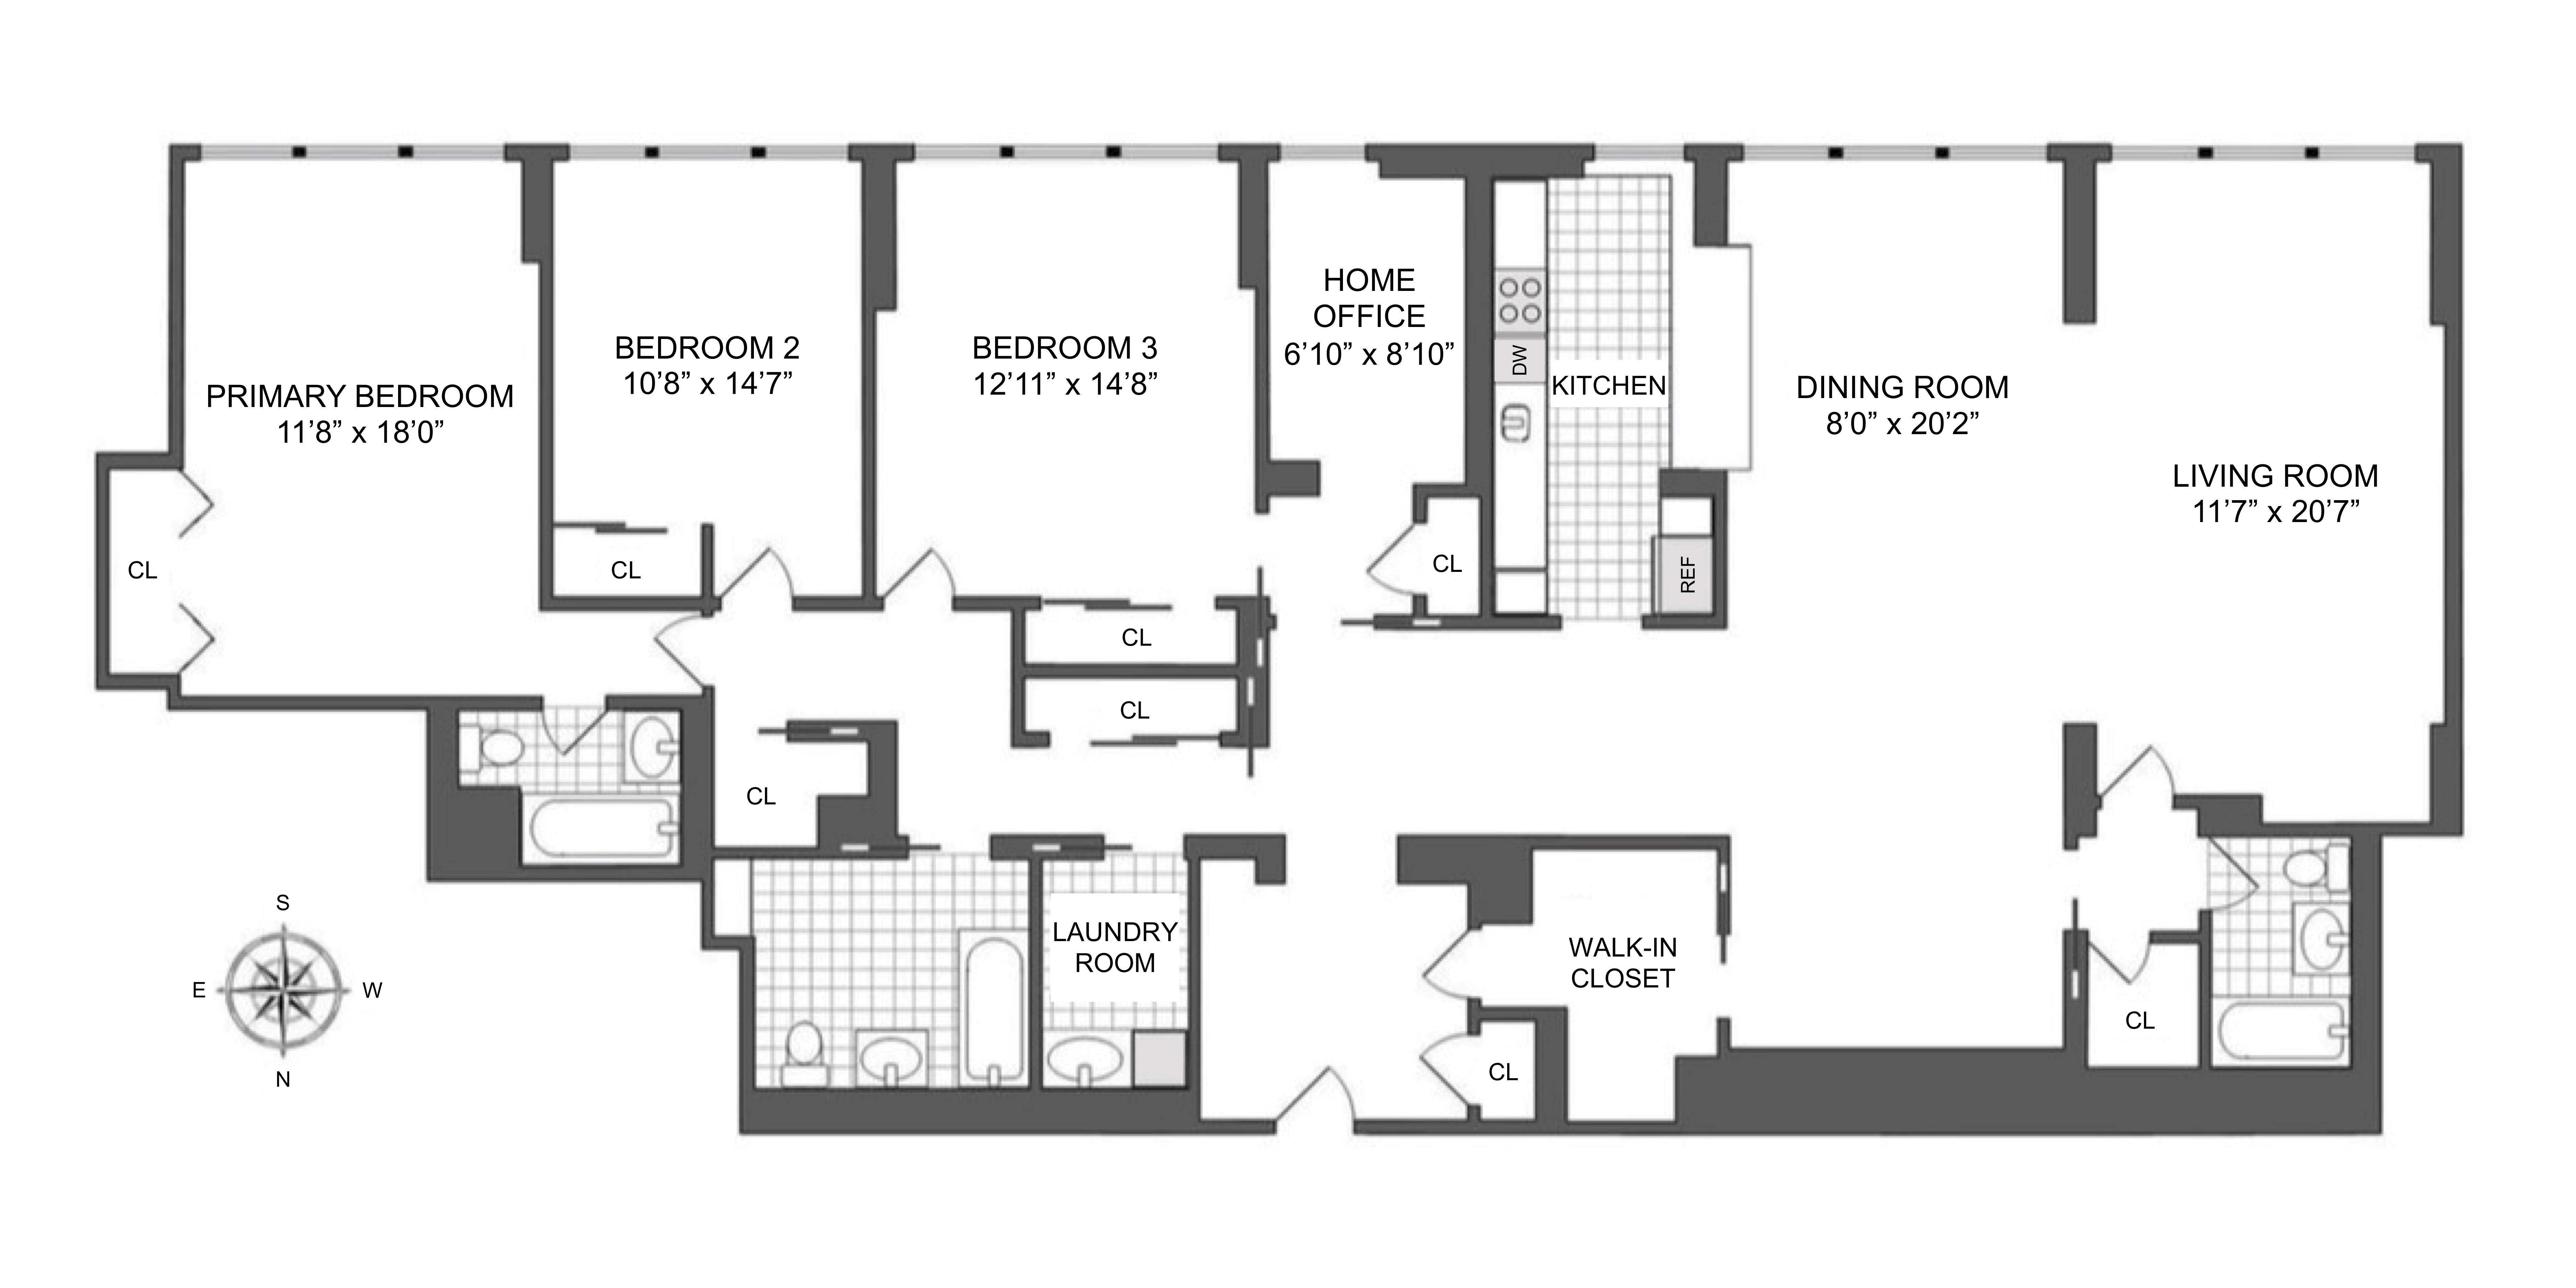 Floorplan for 420 East 51st Street, 8D